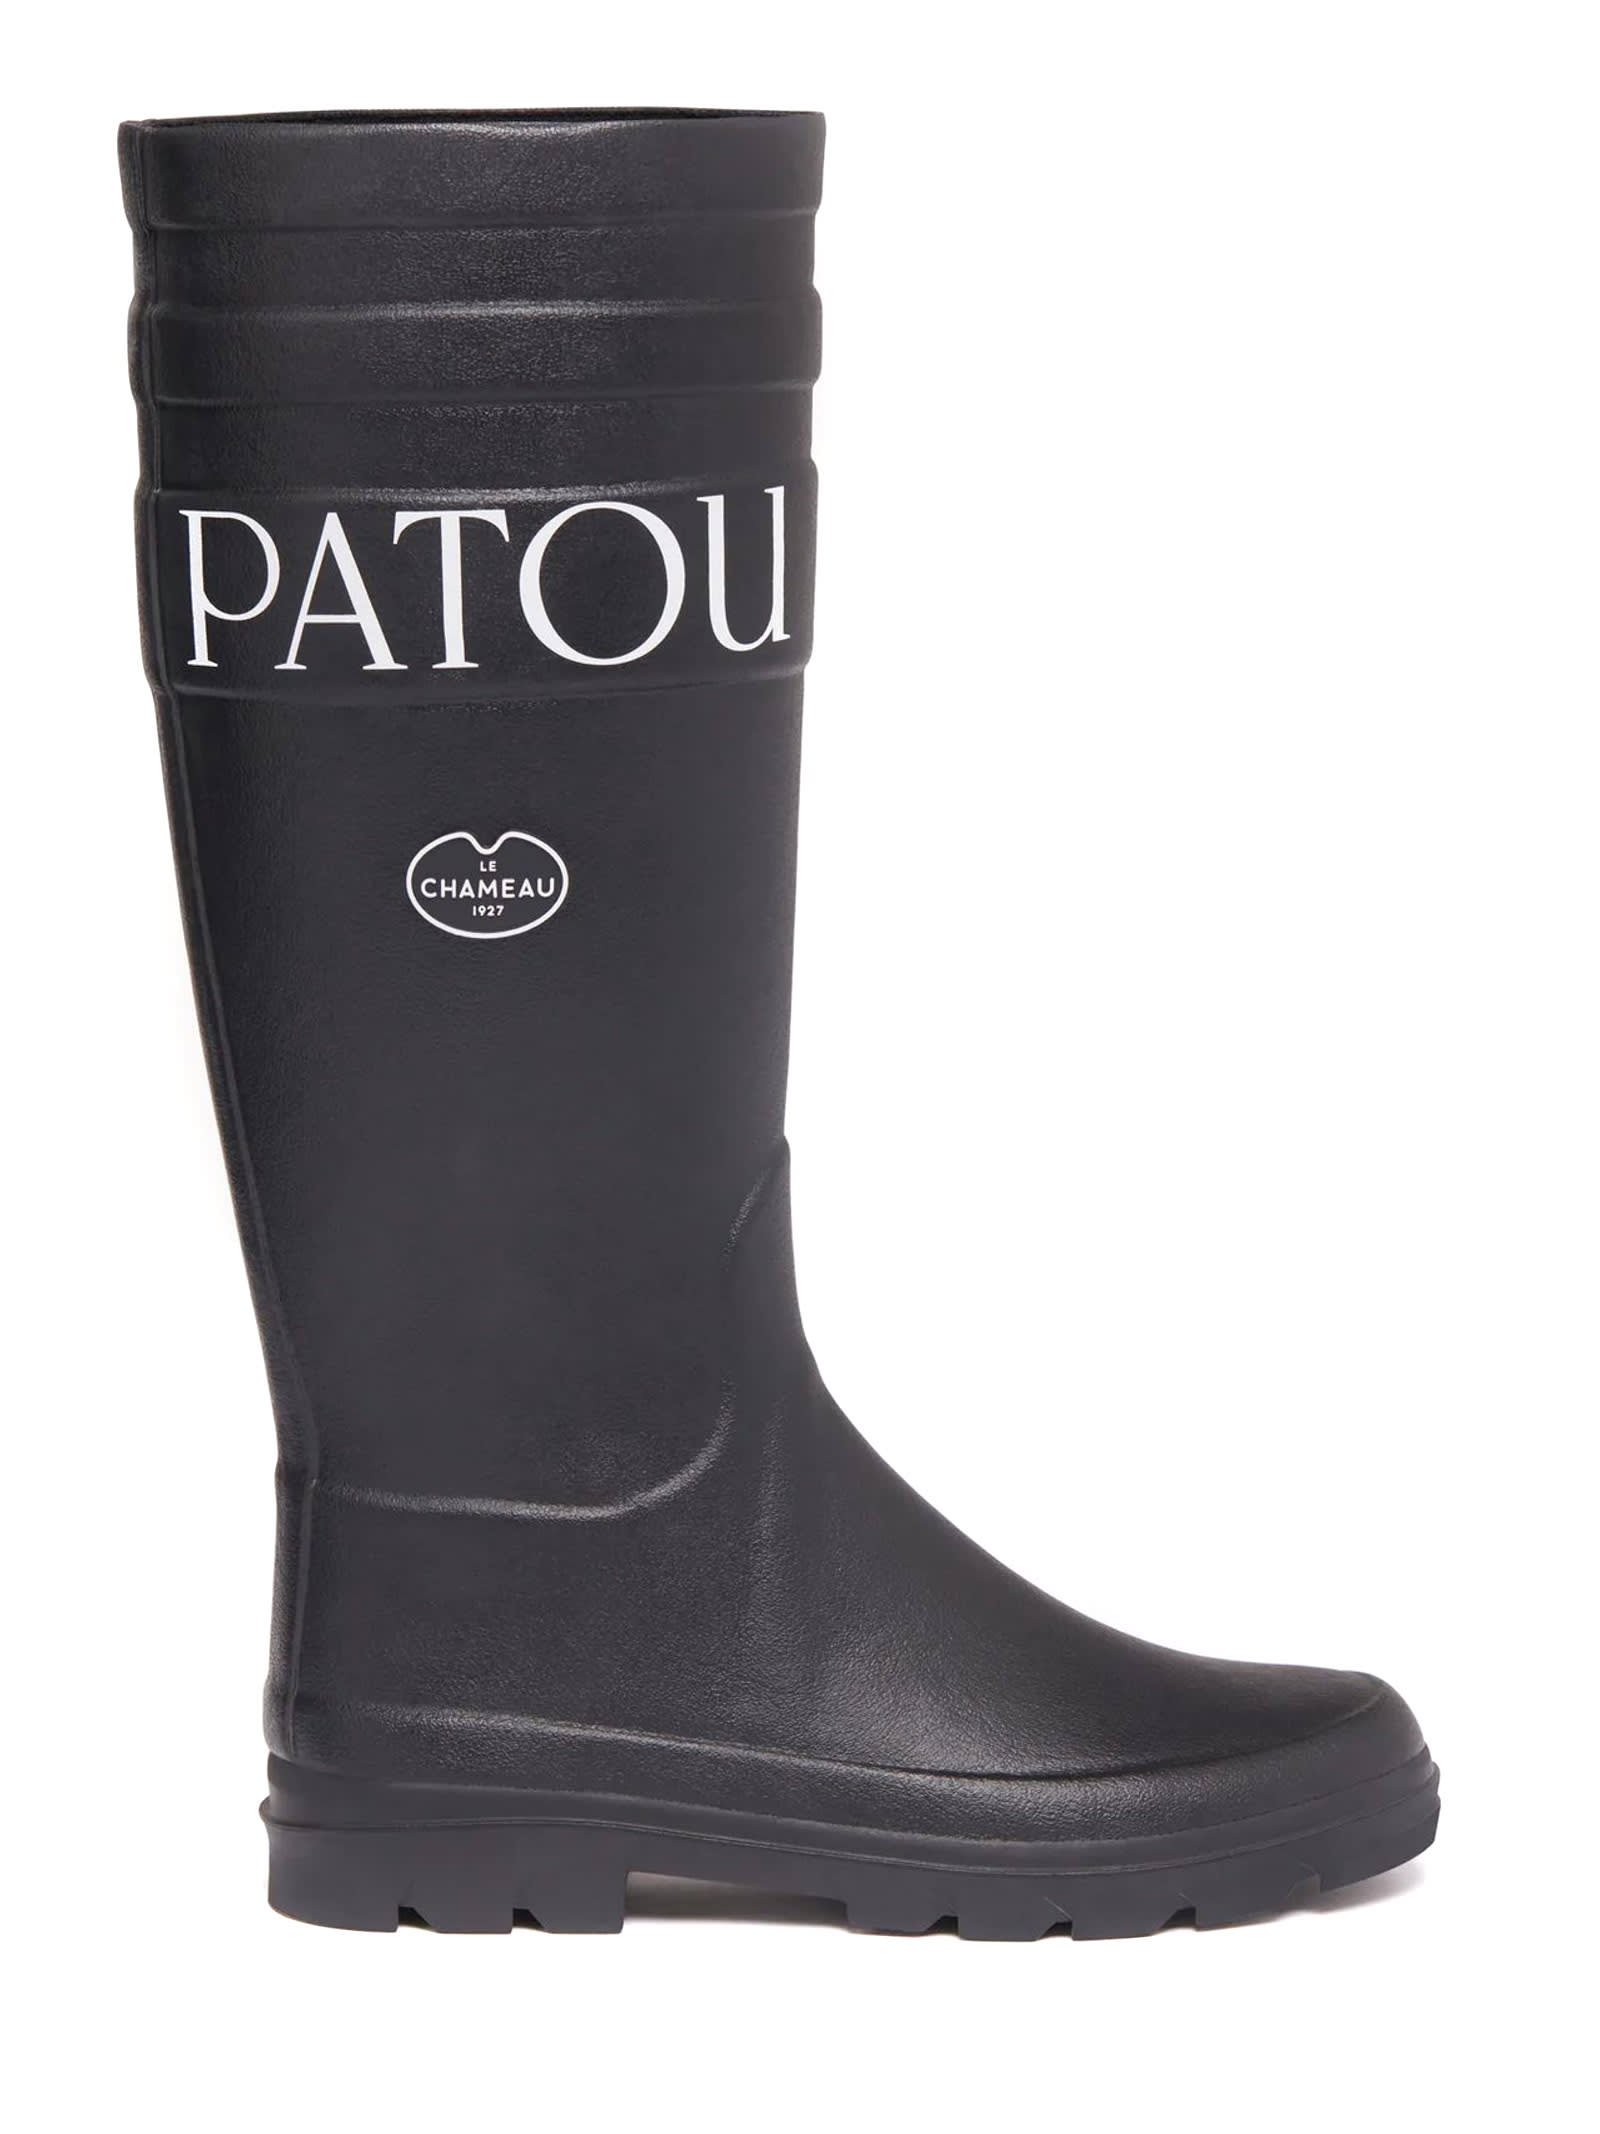 Patou Black Rubber Boots